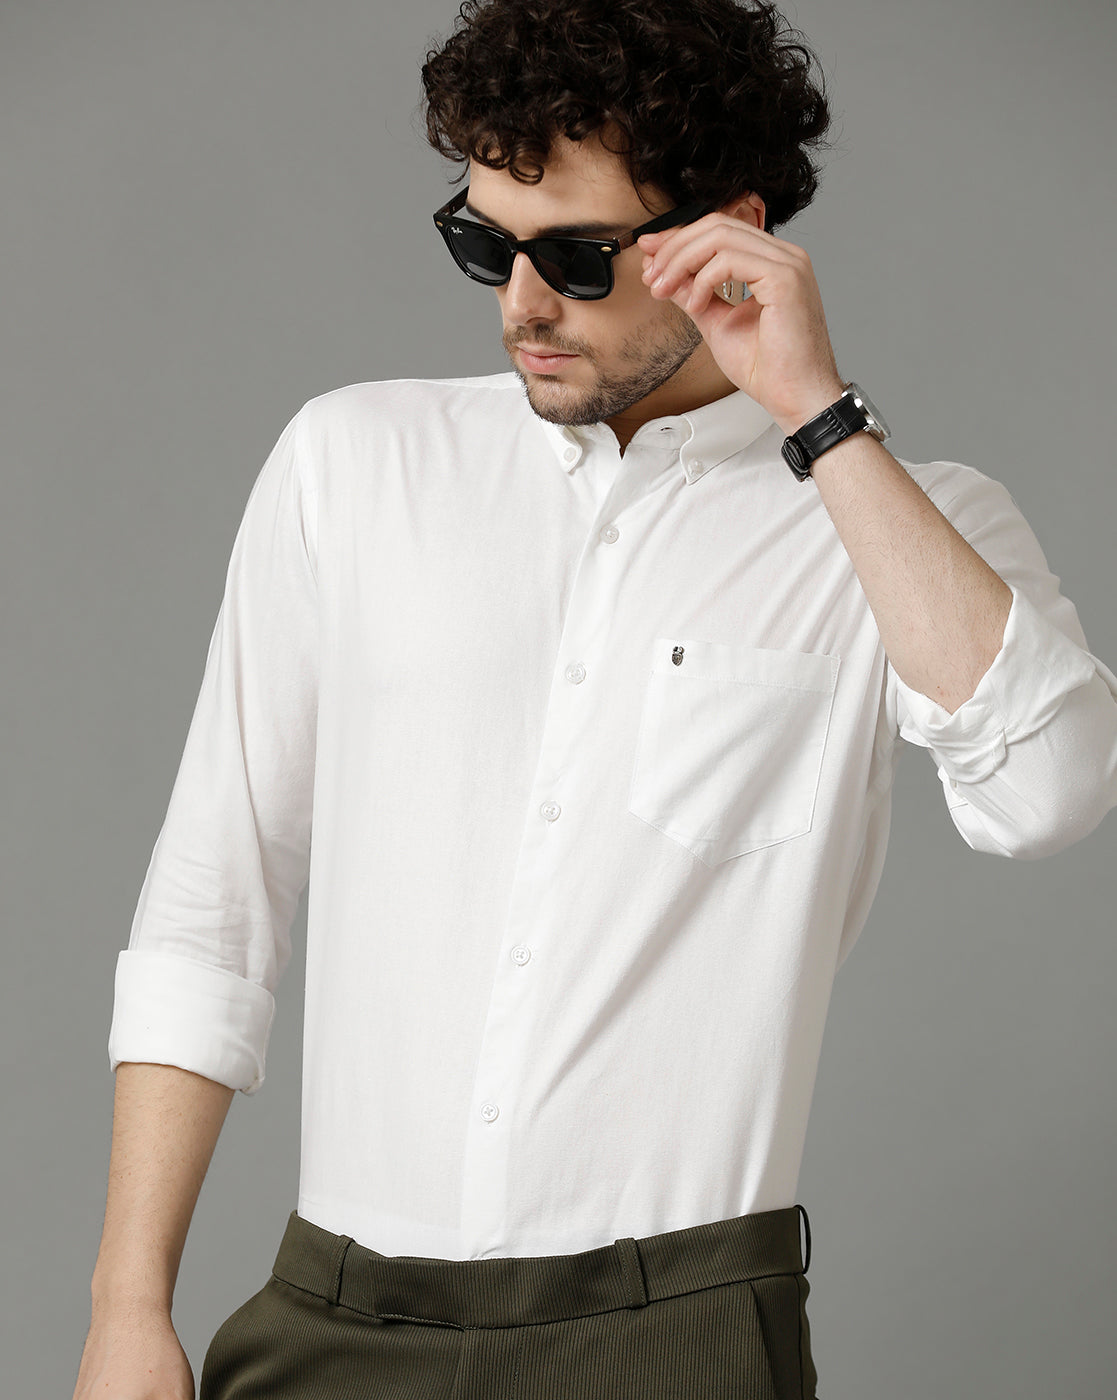 Premium White Cotton Slim Fit Shirt